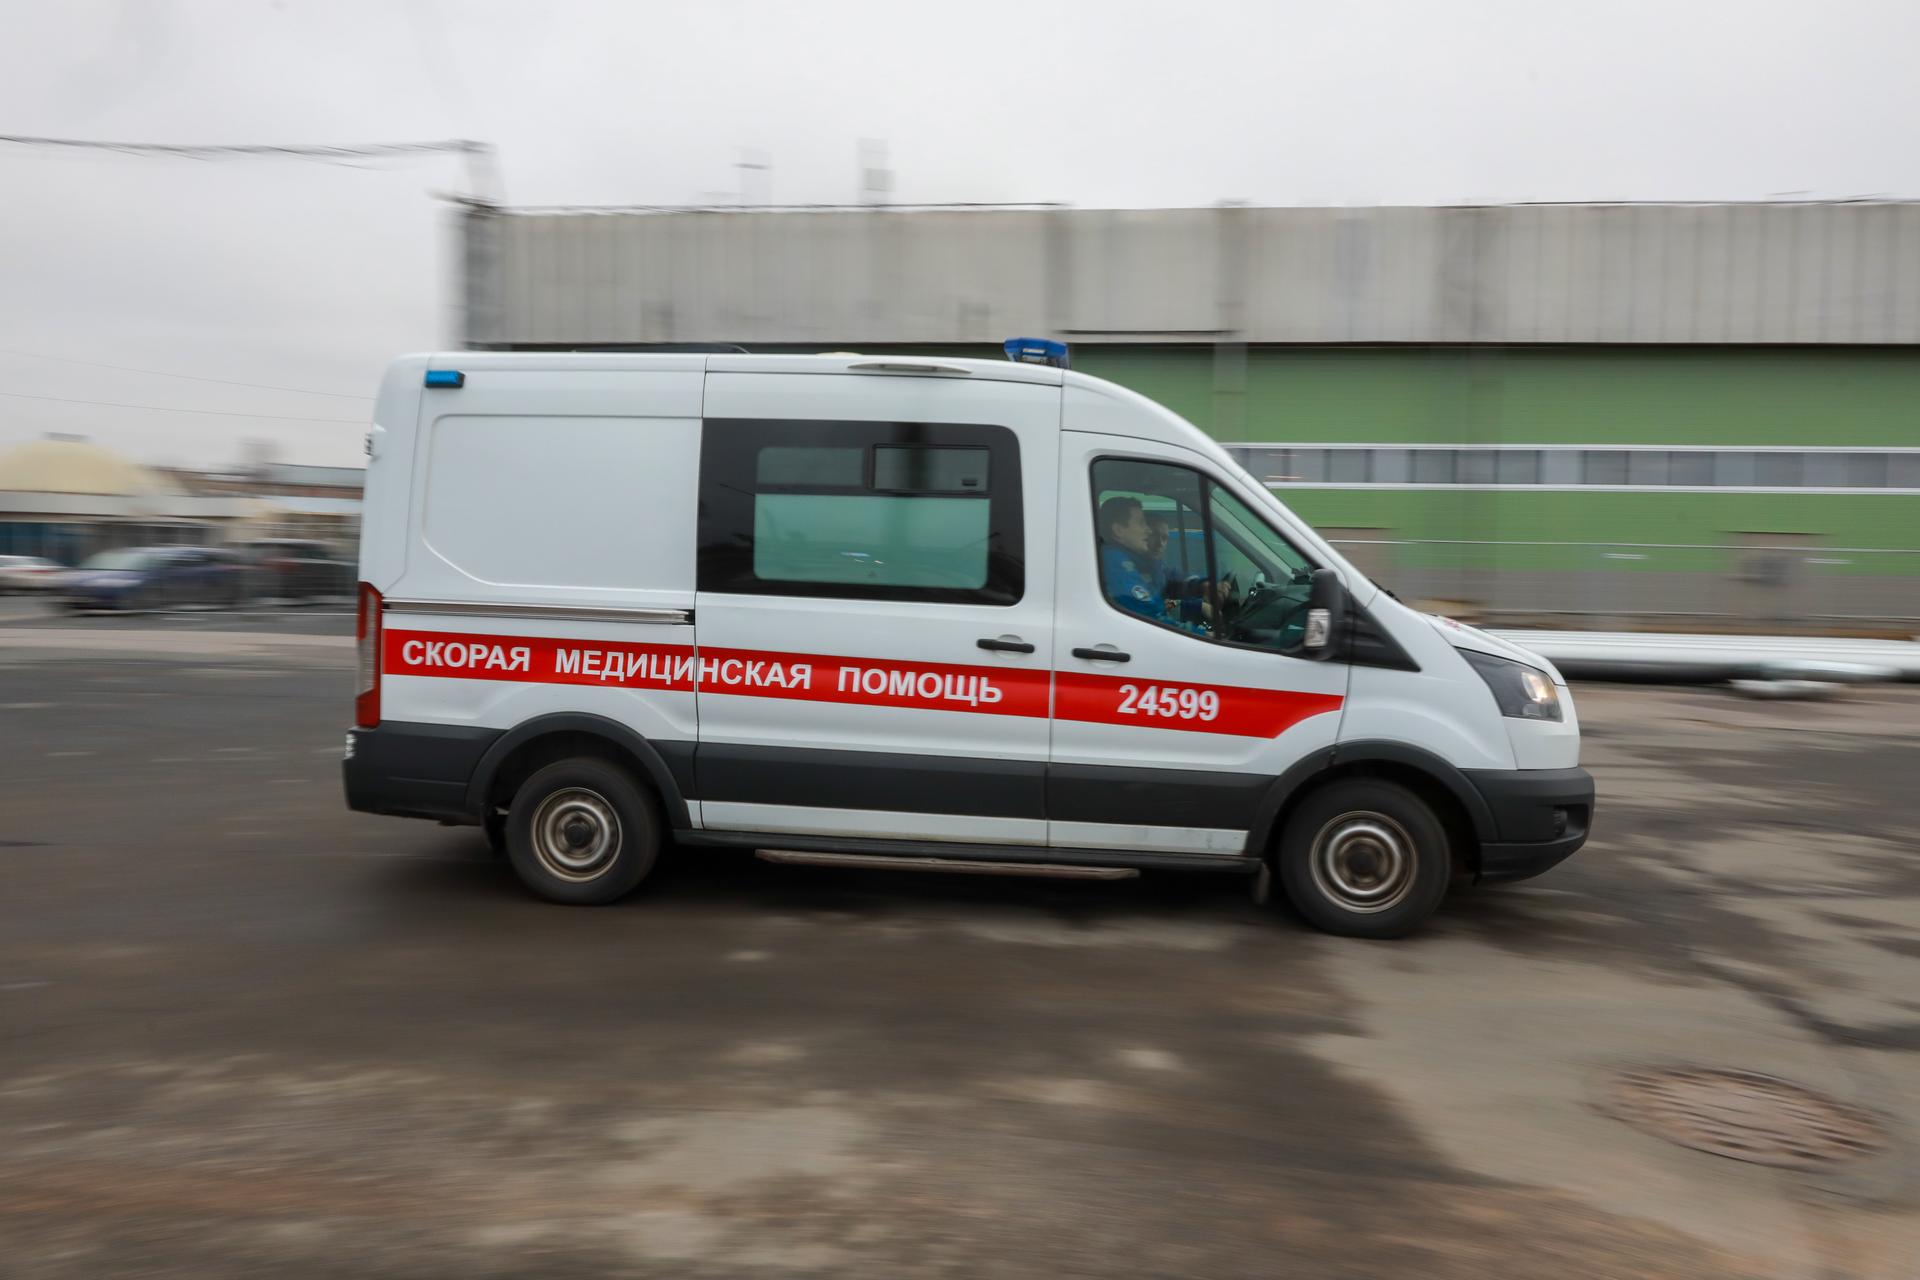 Дело о нападении на водителя скорой помощи в Рыбацком направлено в суд